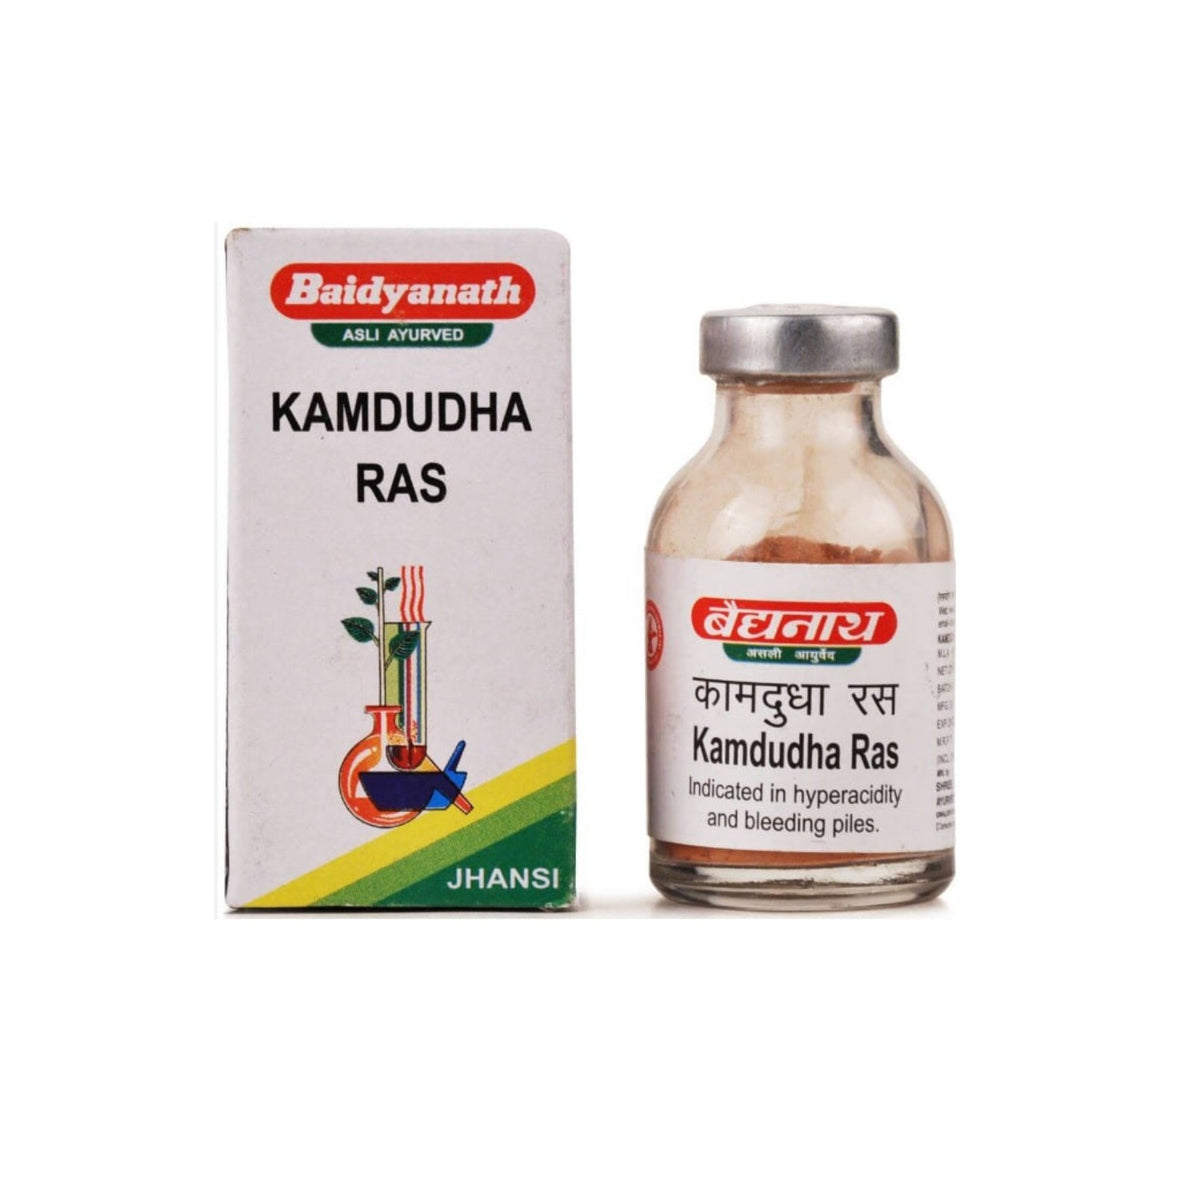 Baidyanath Ayurvedic Kamdudha Ras (Ordinary) Powder